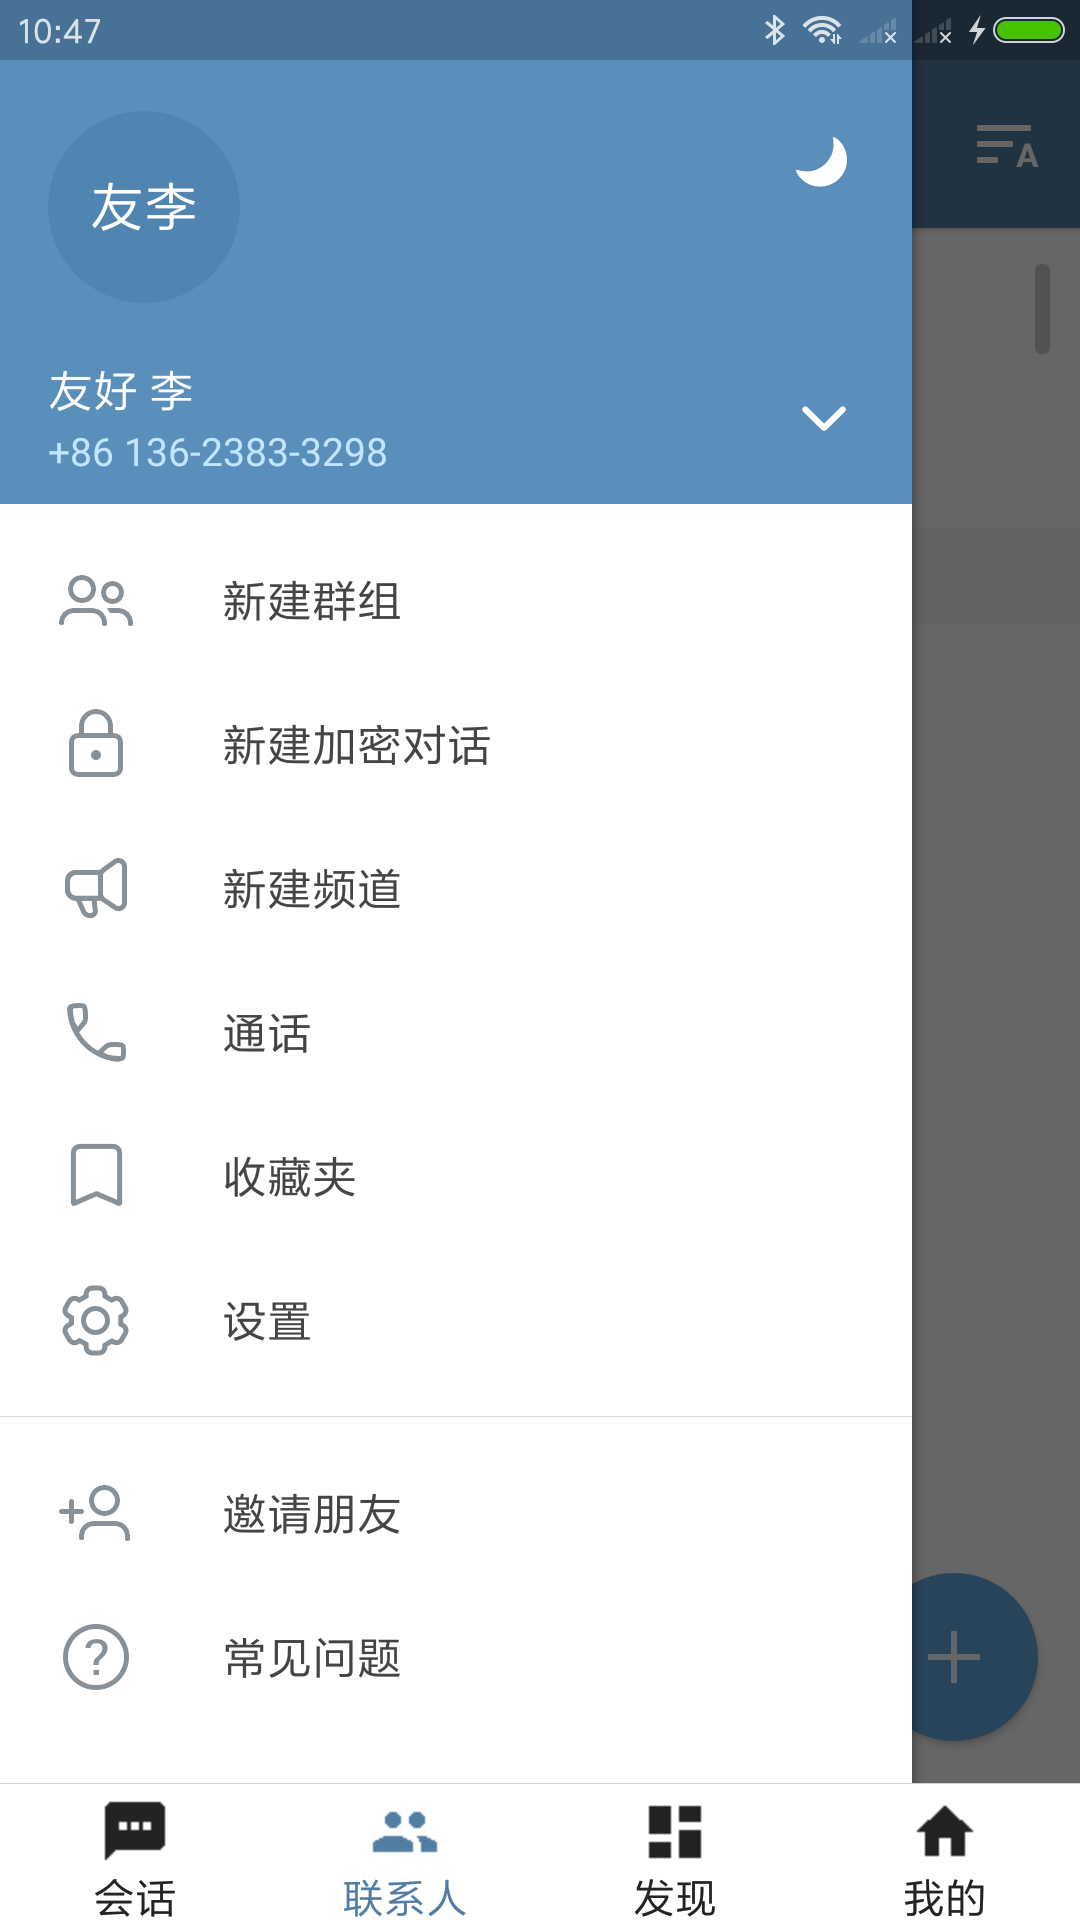 包含纸飞机中文版app官网下载的词条